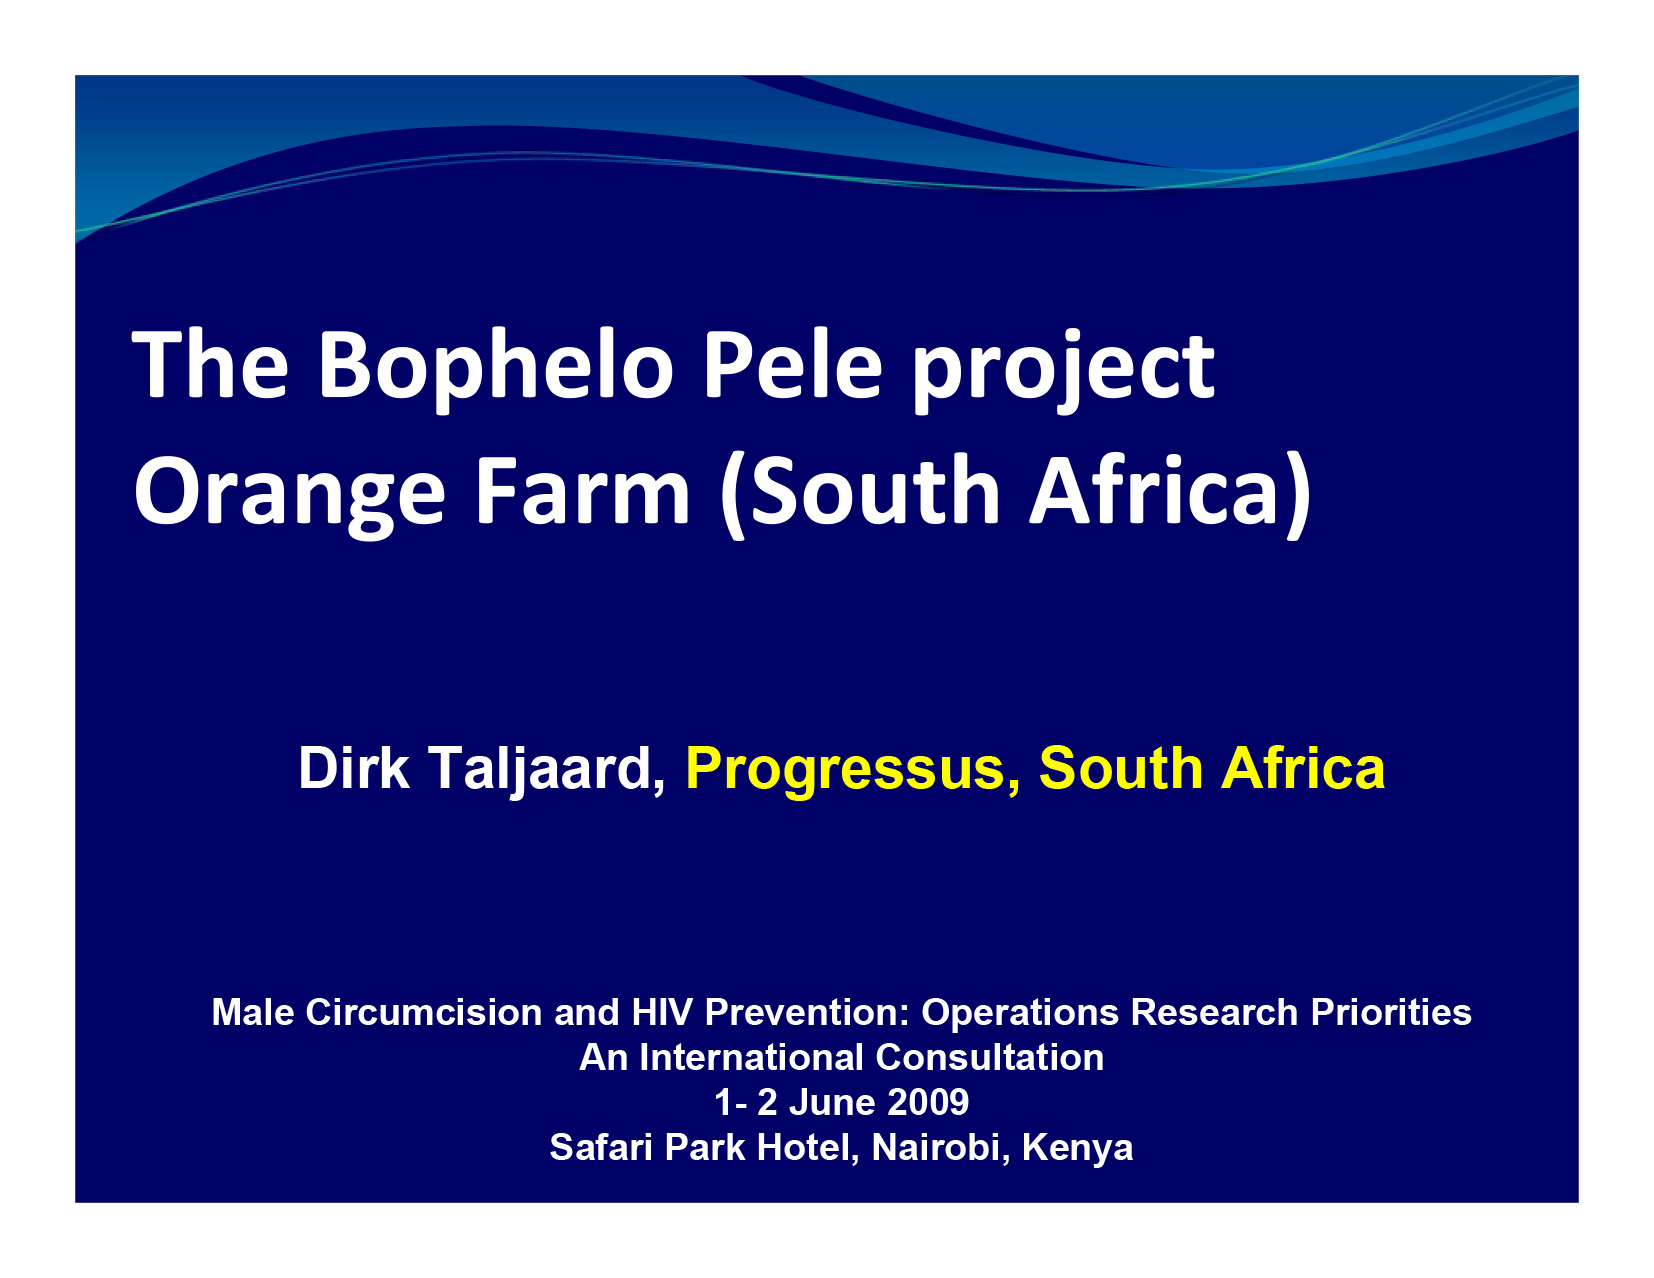 Le projet Bophelo Pele Orange Farm - couverture